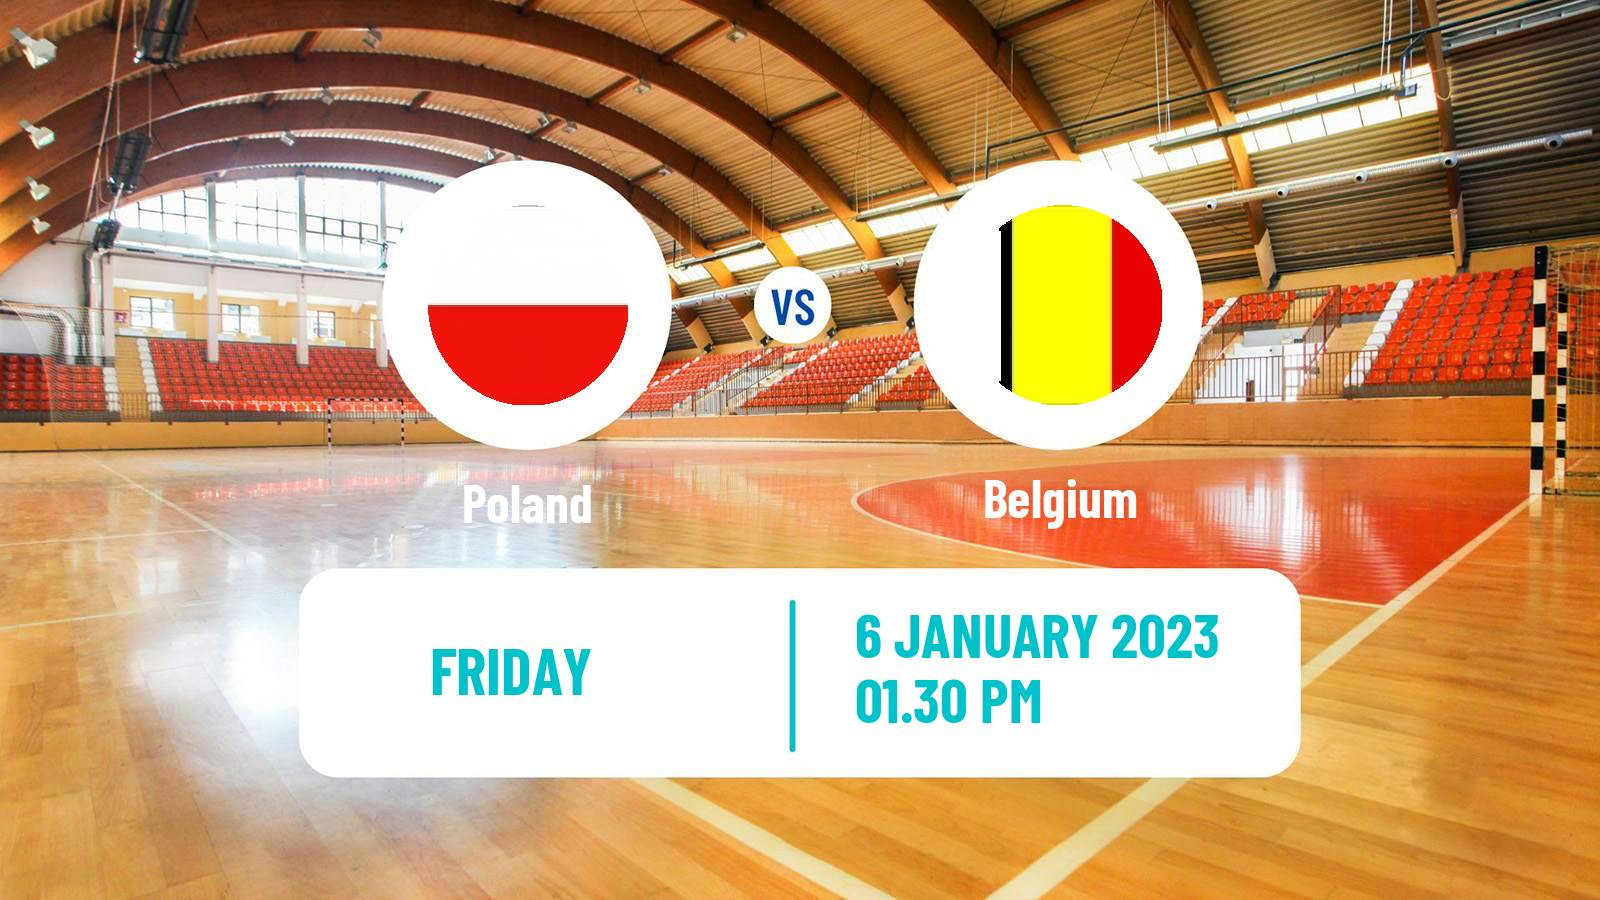 Handball Friendly International Handball Poland - Belgium